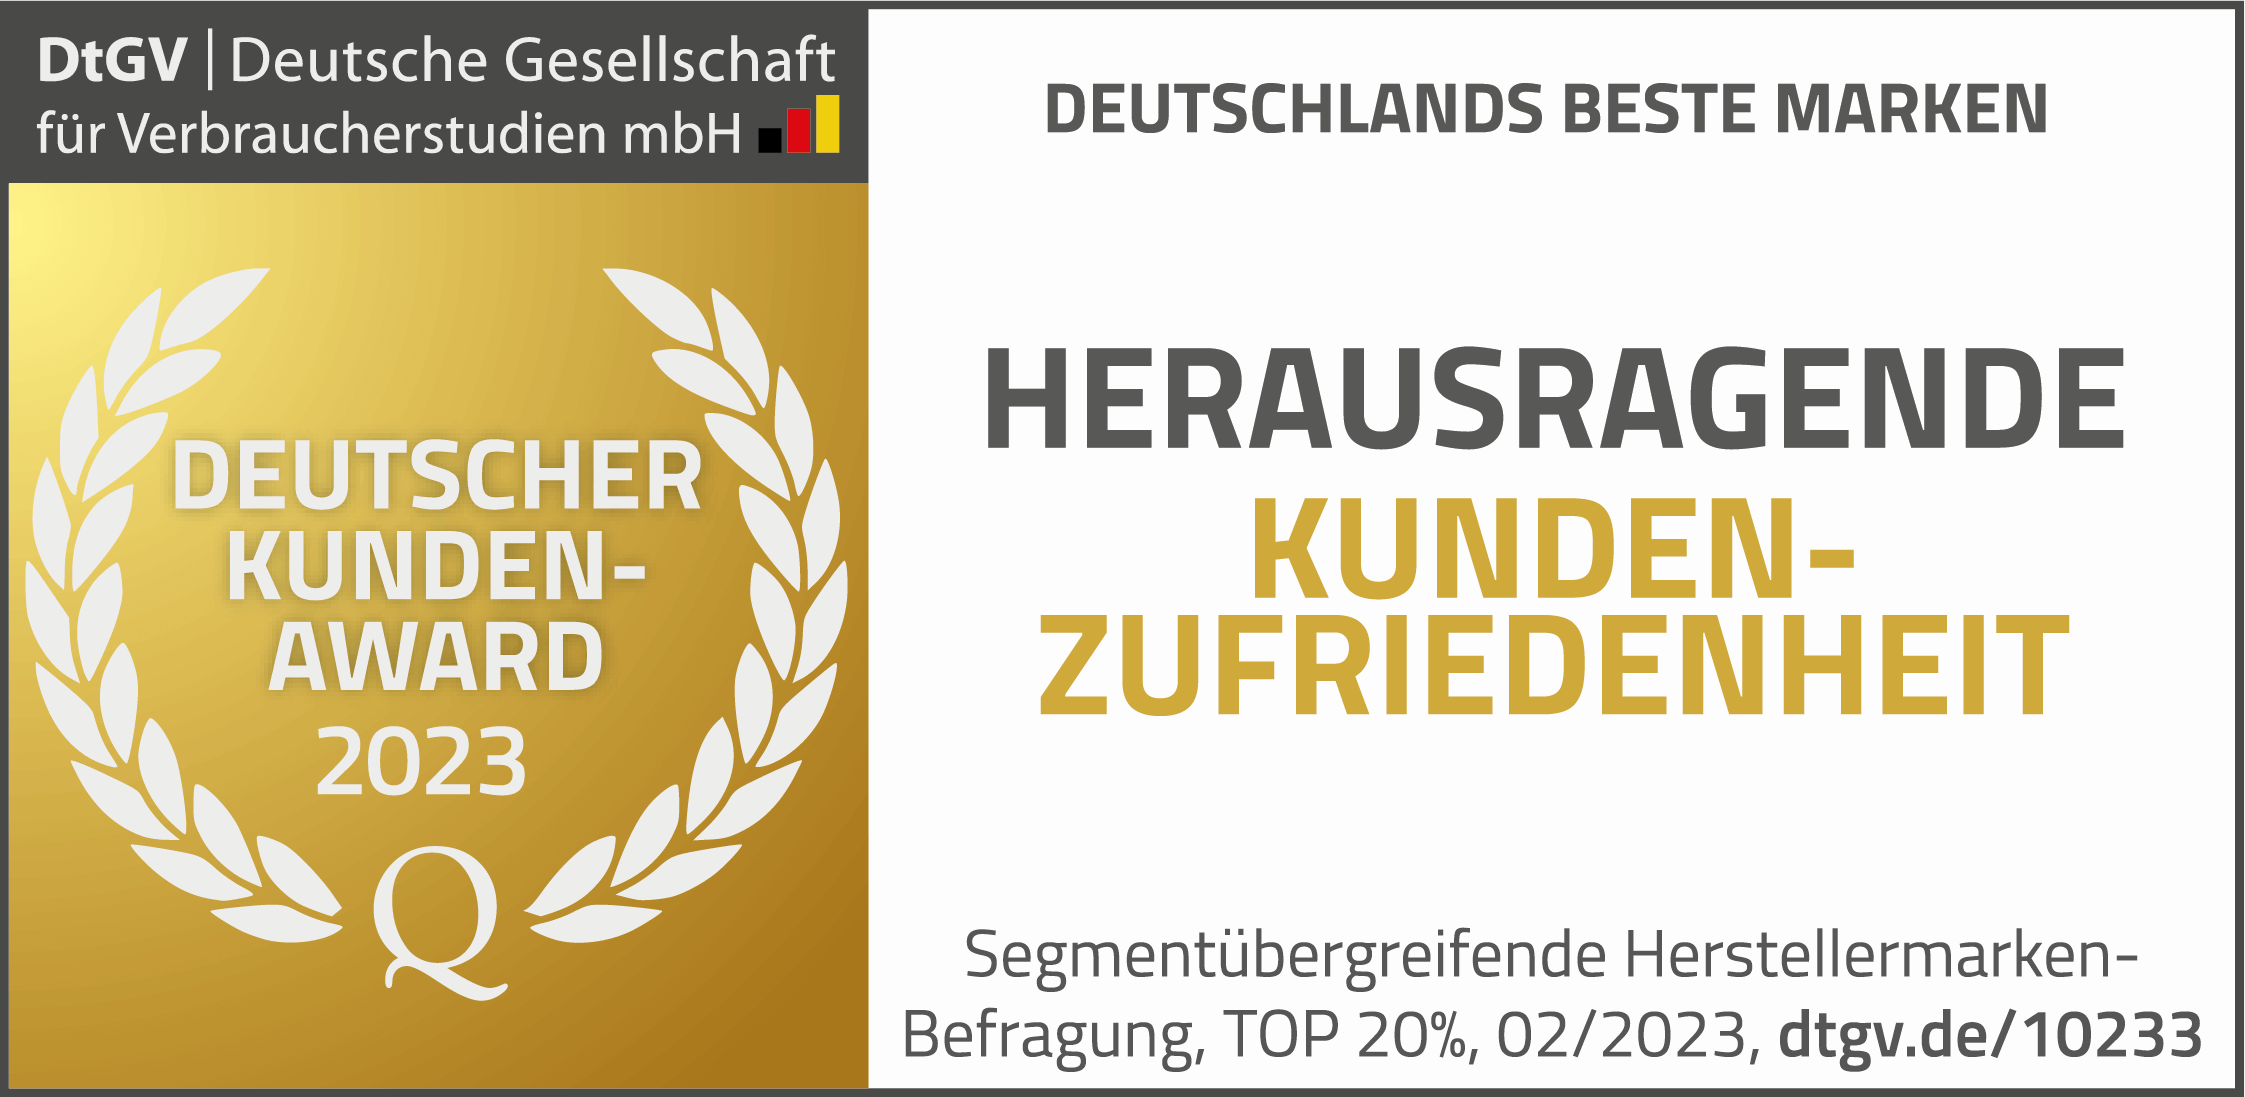 Deutschlands beste Marken: Herausragende Kundenzufriedenheit